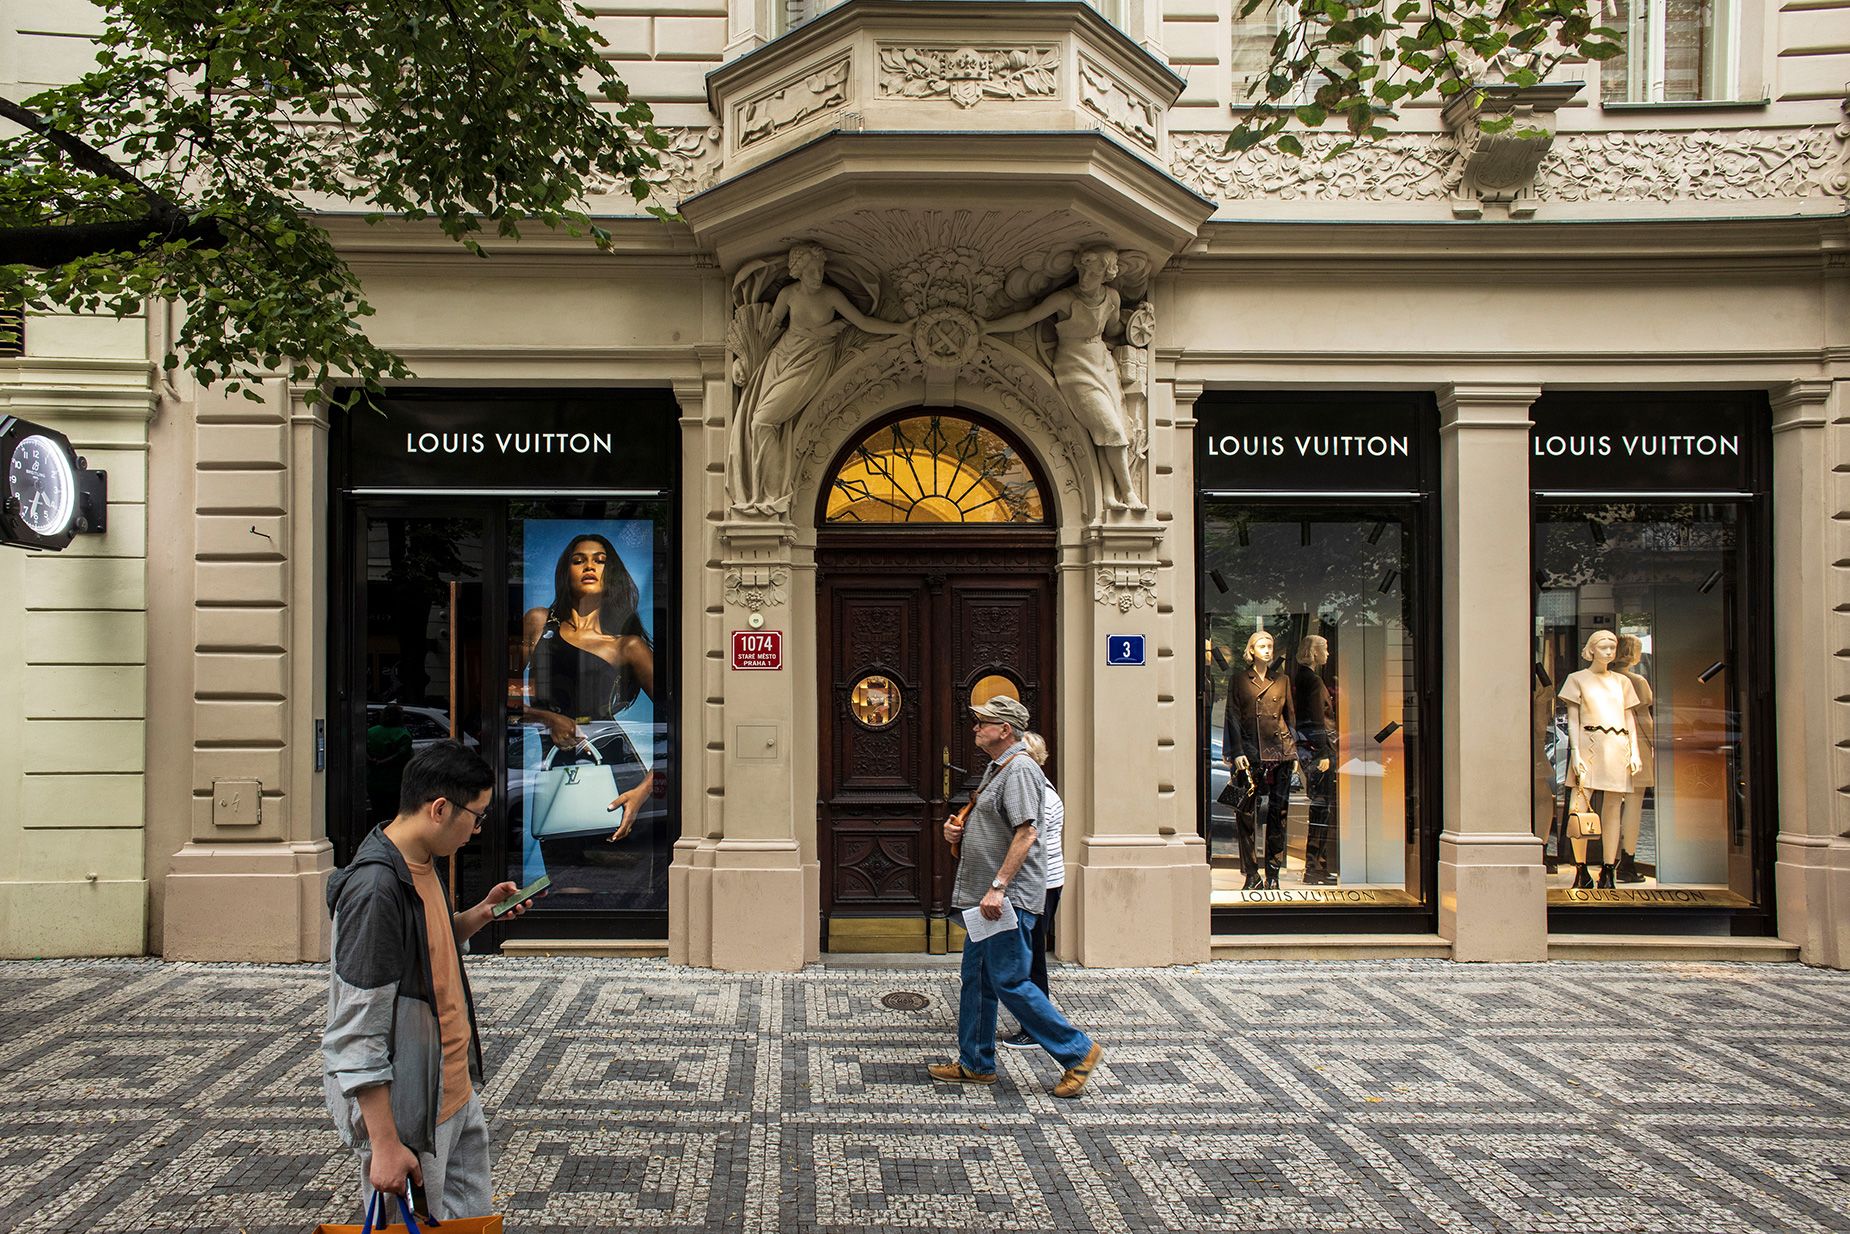 Pedestrians pass a Louis Vuitton luxury boutique on Parizska street in Prague, Czech Republic.